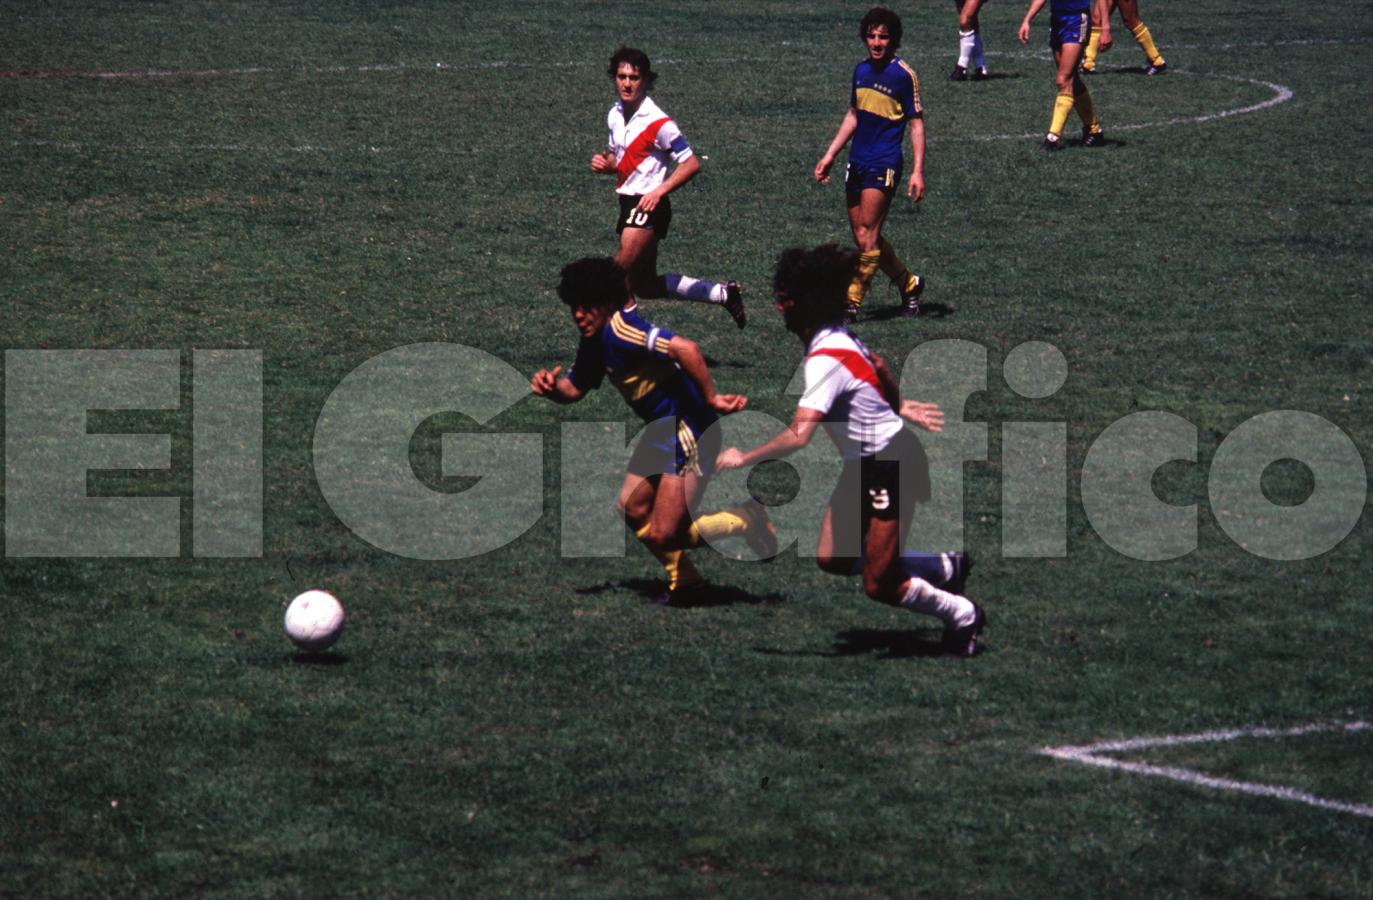 Imagen Nacional 1981: Boca 2 - River 3. Diego anotó un gol pero perdió el duelo con Kempes